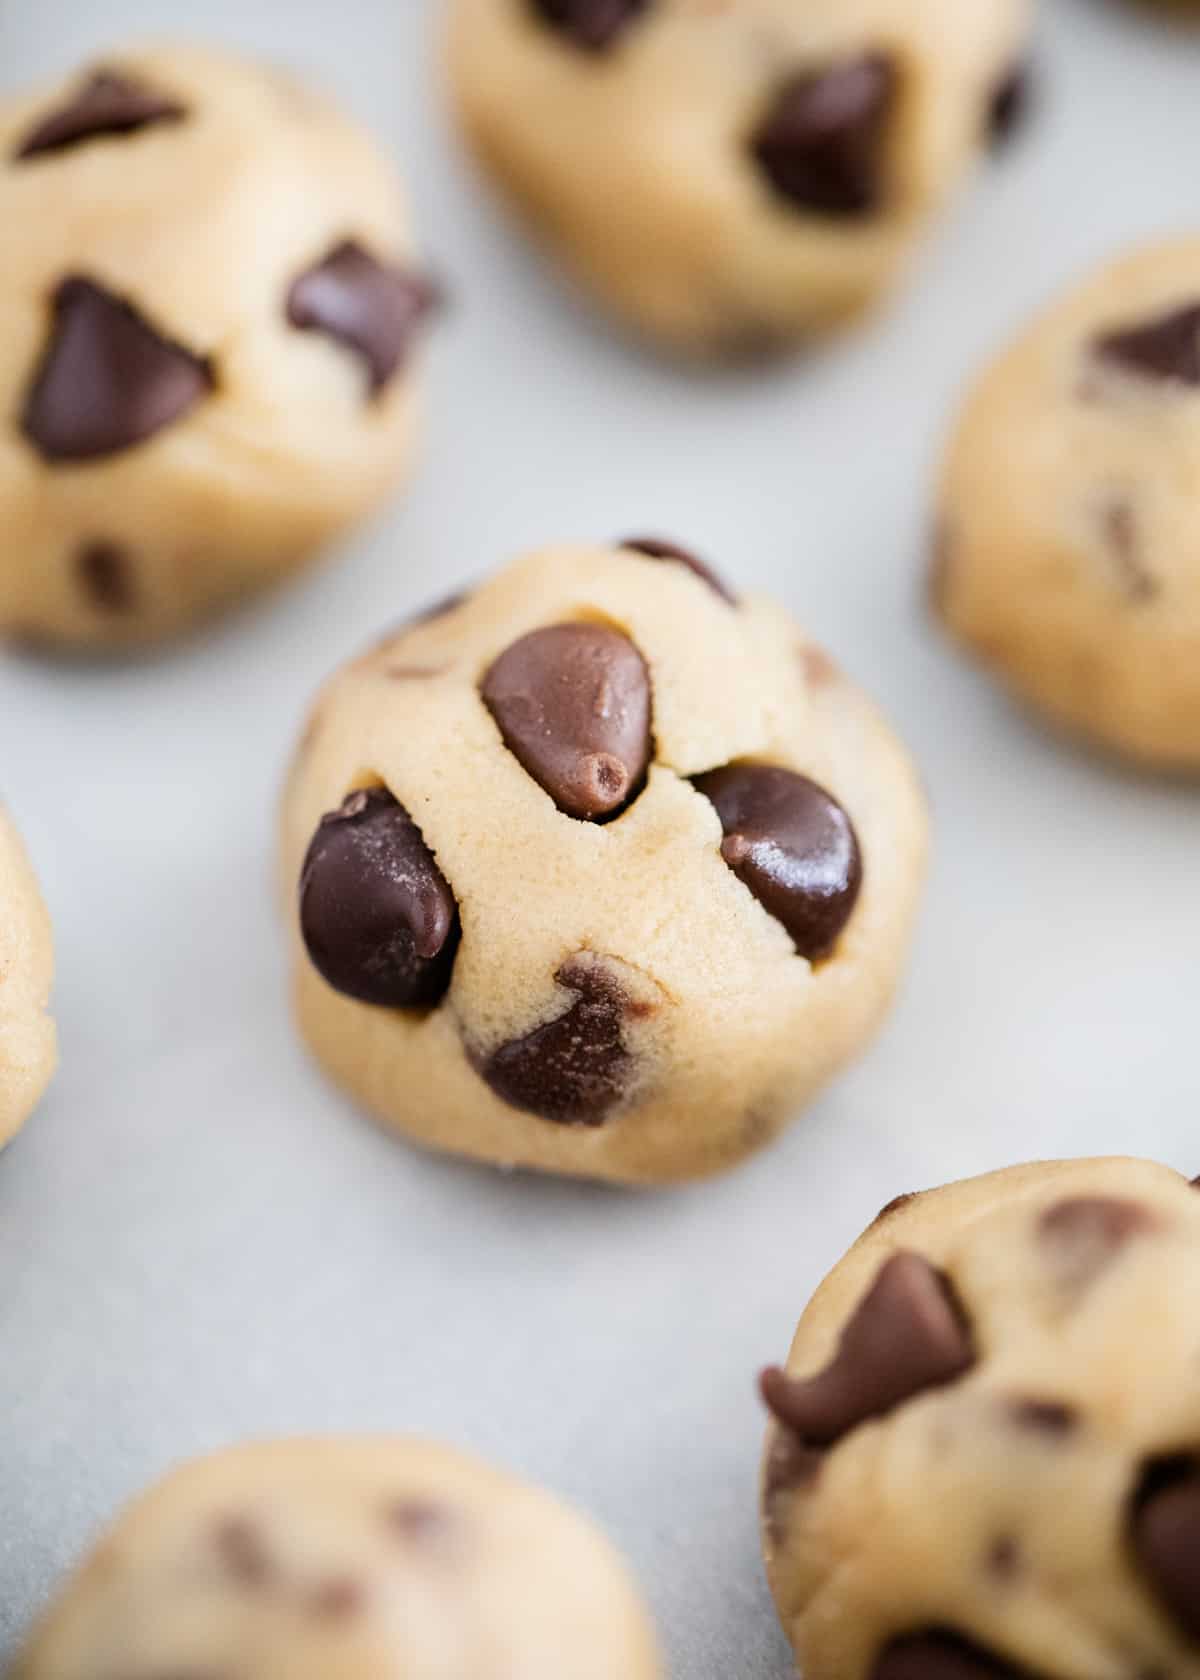 Edible cookie dough balls.